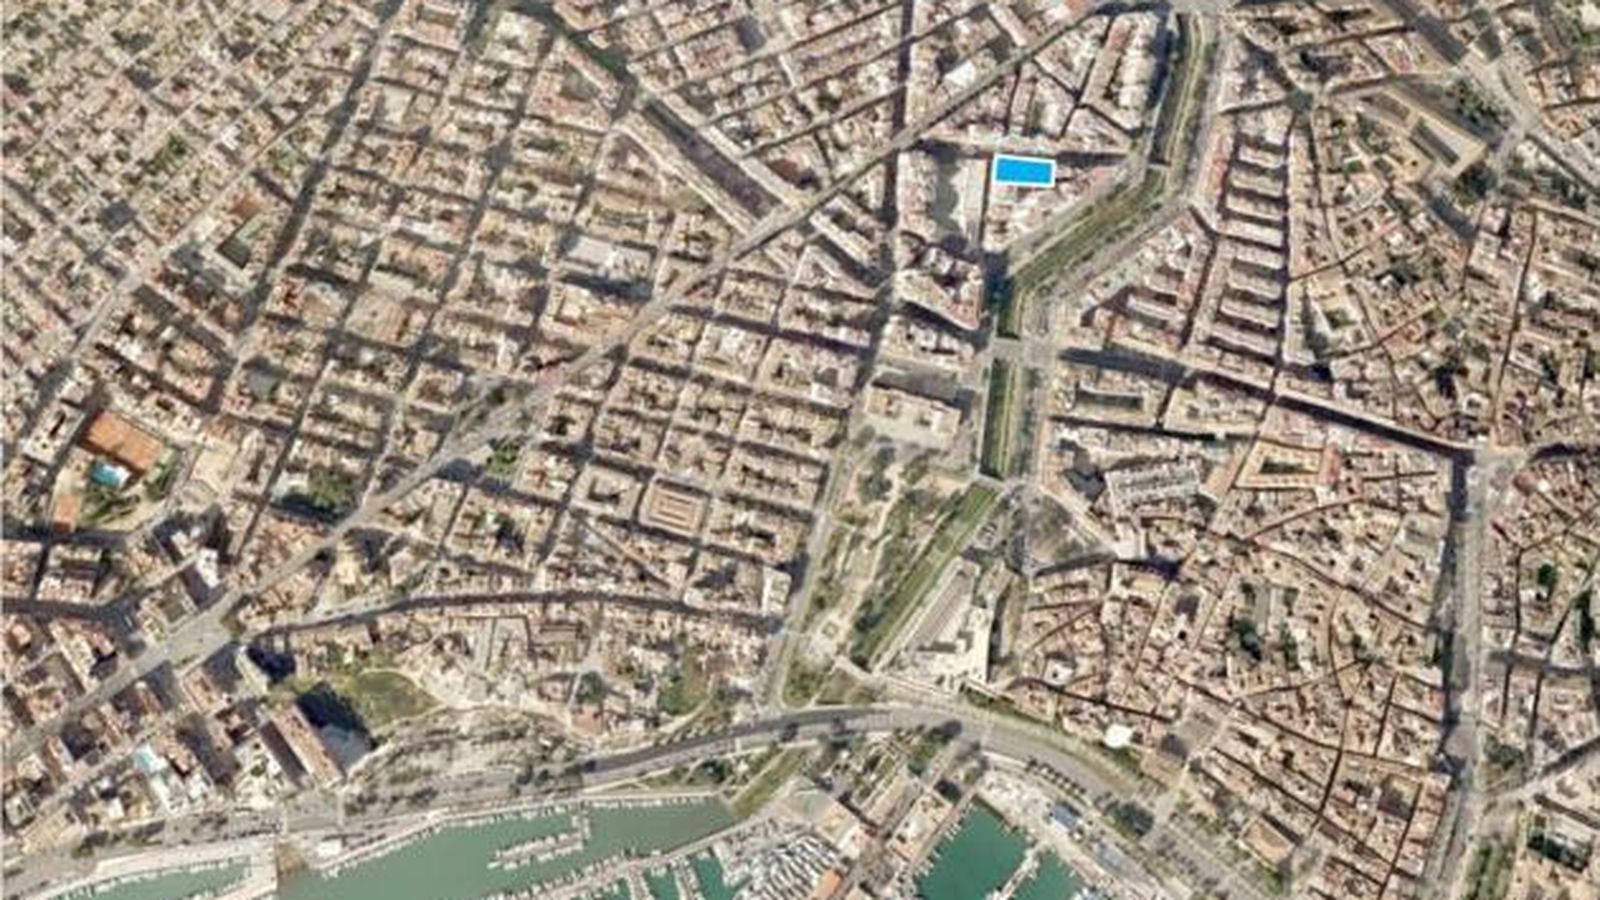 Foto: Vista aérea del solar a la venta en Palma de Mallorca, uno de los activos más atractivos. (Addmeet)